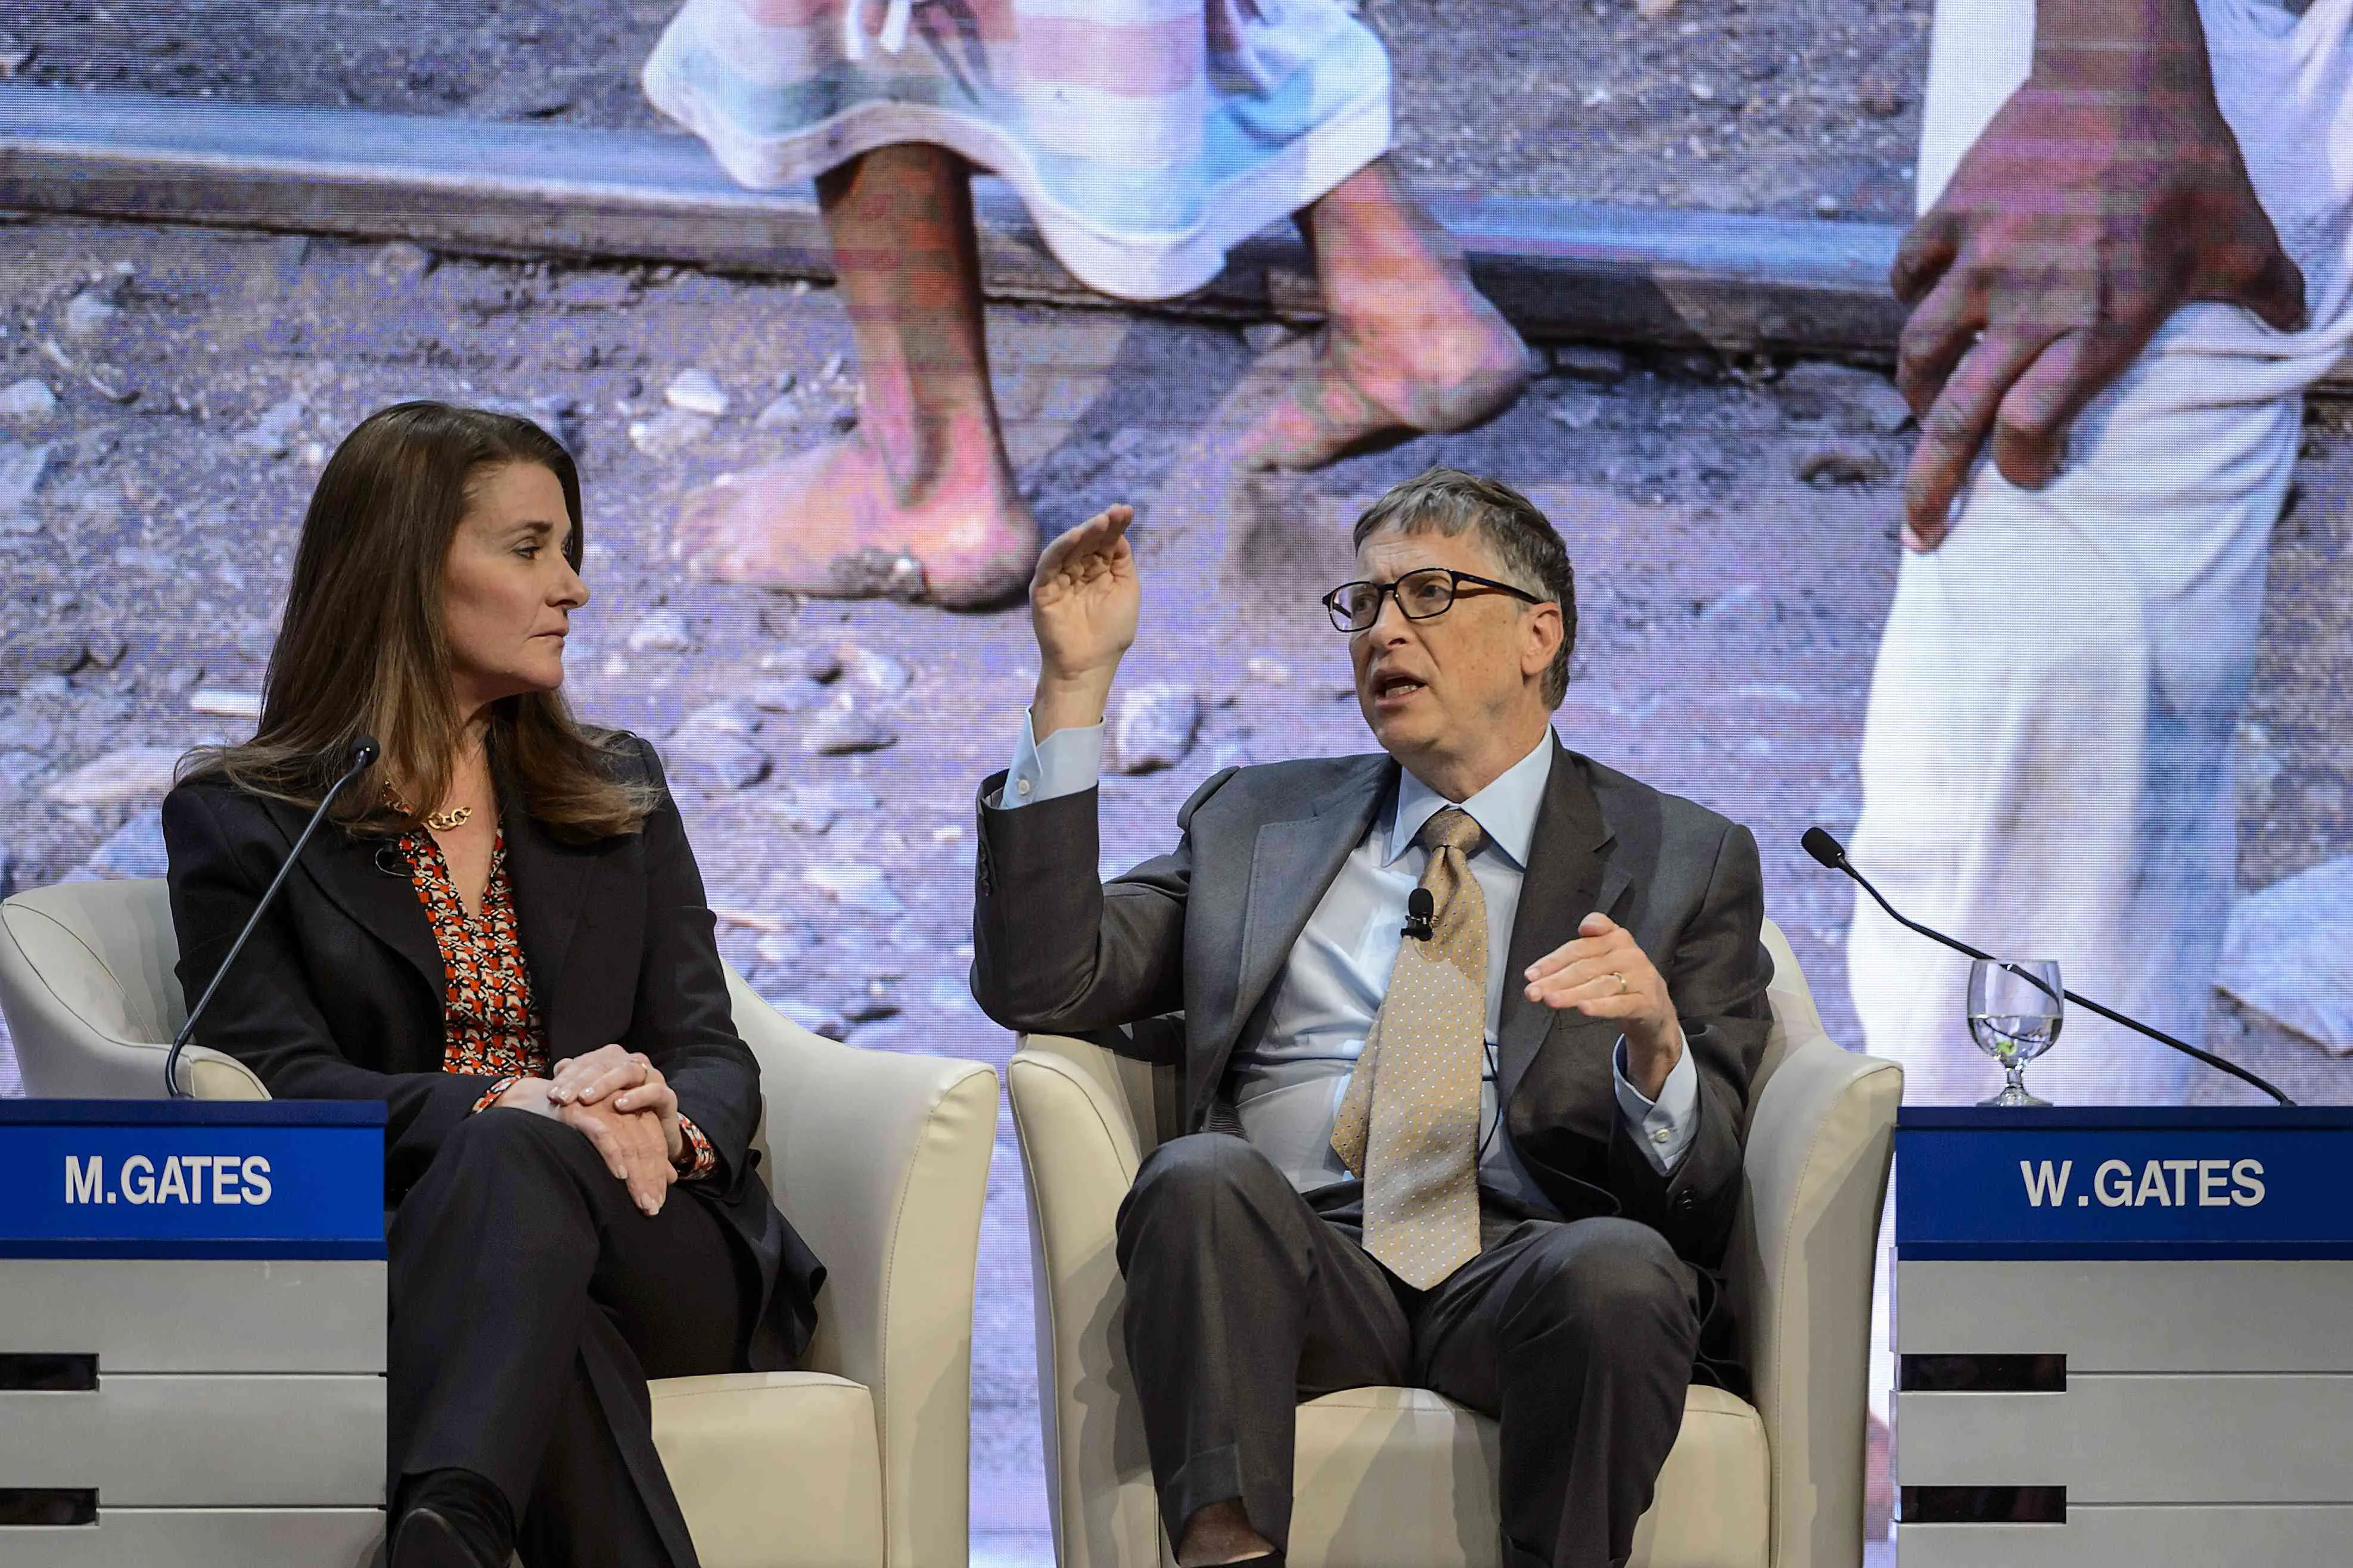 Melinda e Bill Gates participam de uma sessão no Centro de Congressos durante o Fórum Econômico Mundial